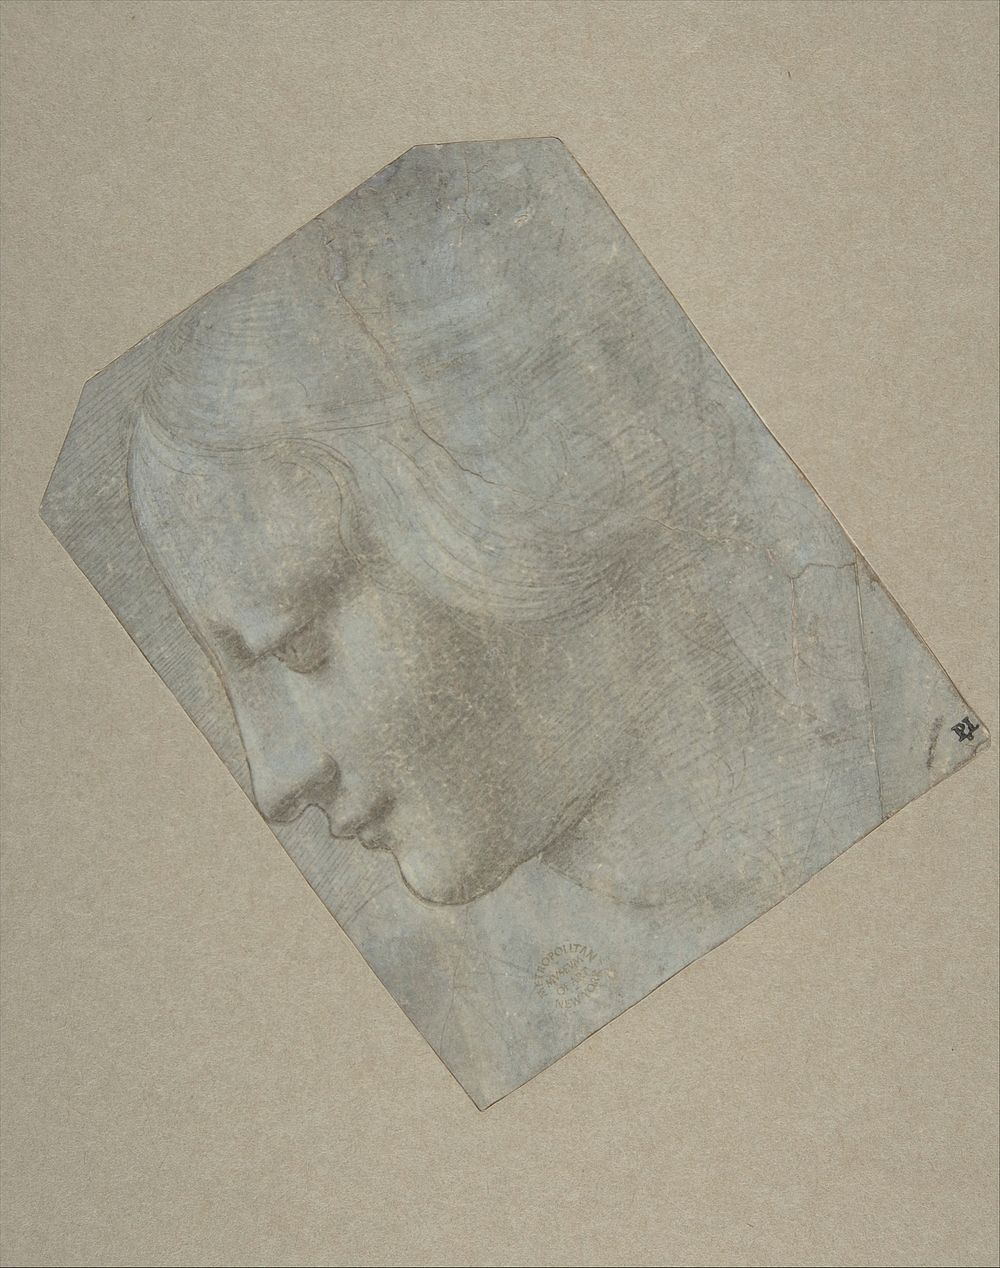 The Head of a Woman in Profile Facing Left, Giovanni Antonio Boltraffio